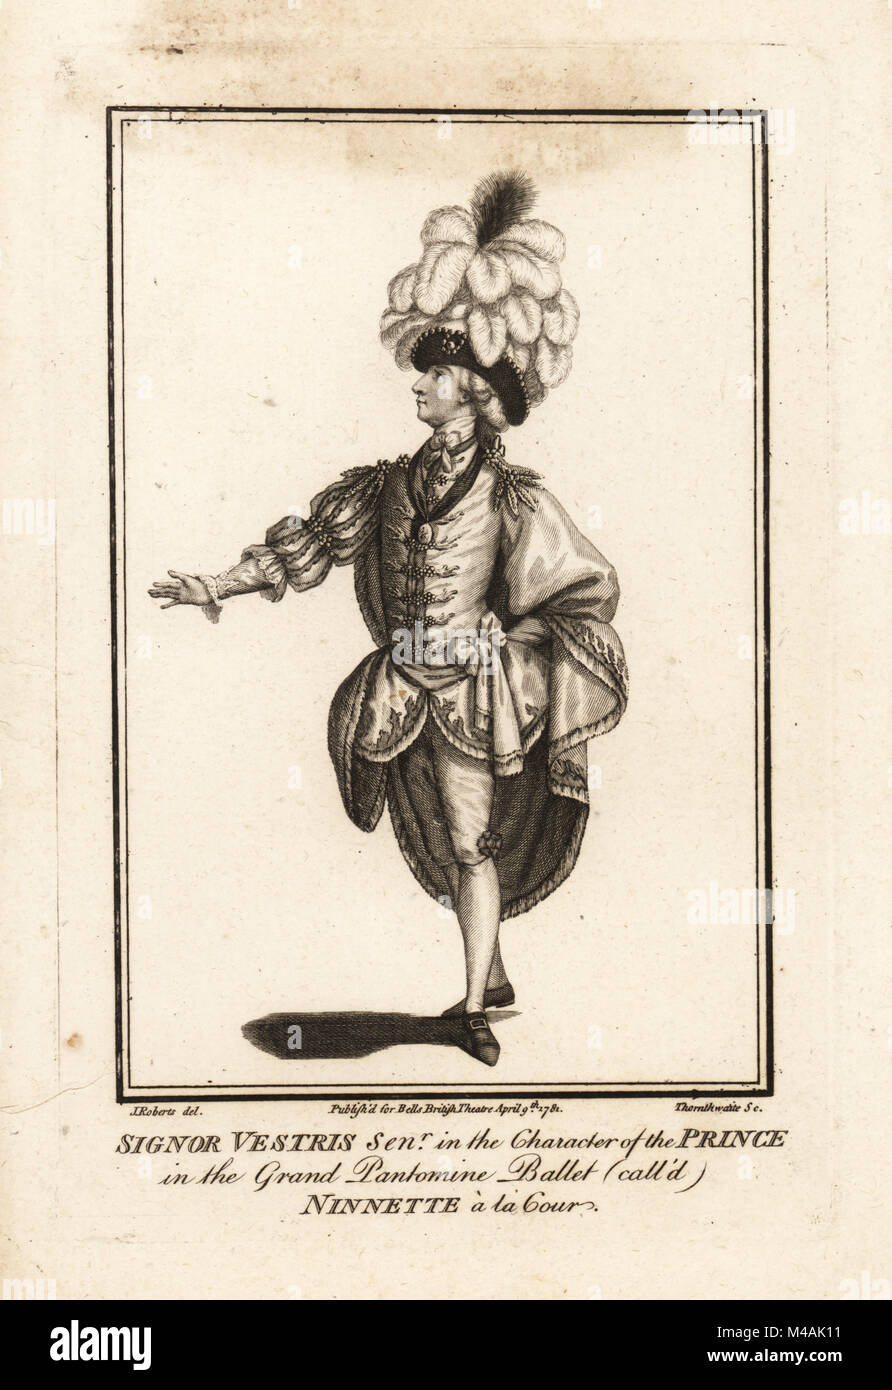 Signor Gaëtan Vestris hauts dans le caractère du Prince au grand ballet pantomime appelée Ninnette a la Cour. La gravure sur cuivre par après une illustration par Thornthwaite John Roberts à John Bell's British Theatre, le 9 avril 1781, Londres. Banque D'Images